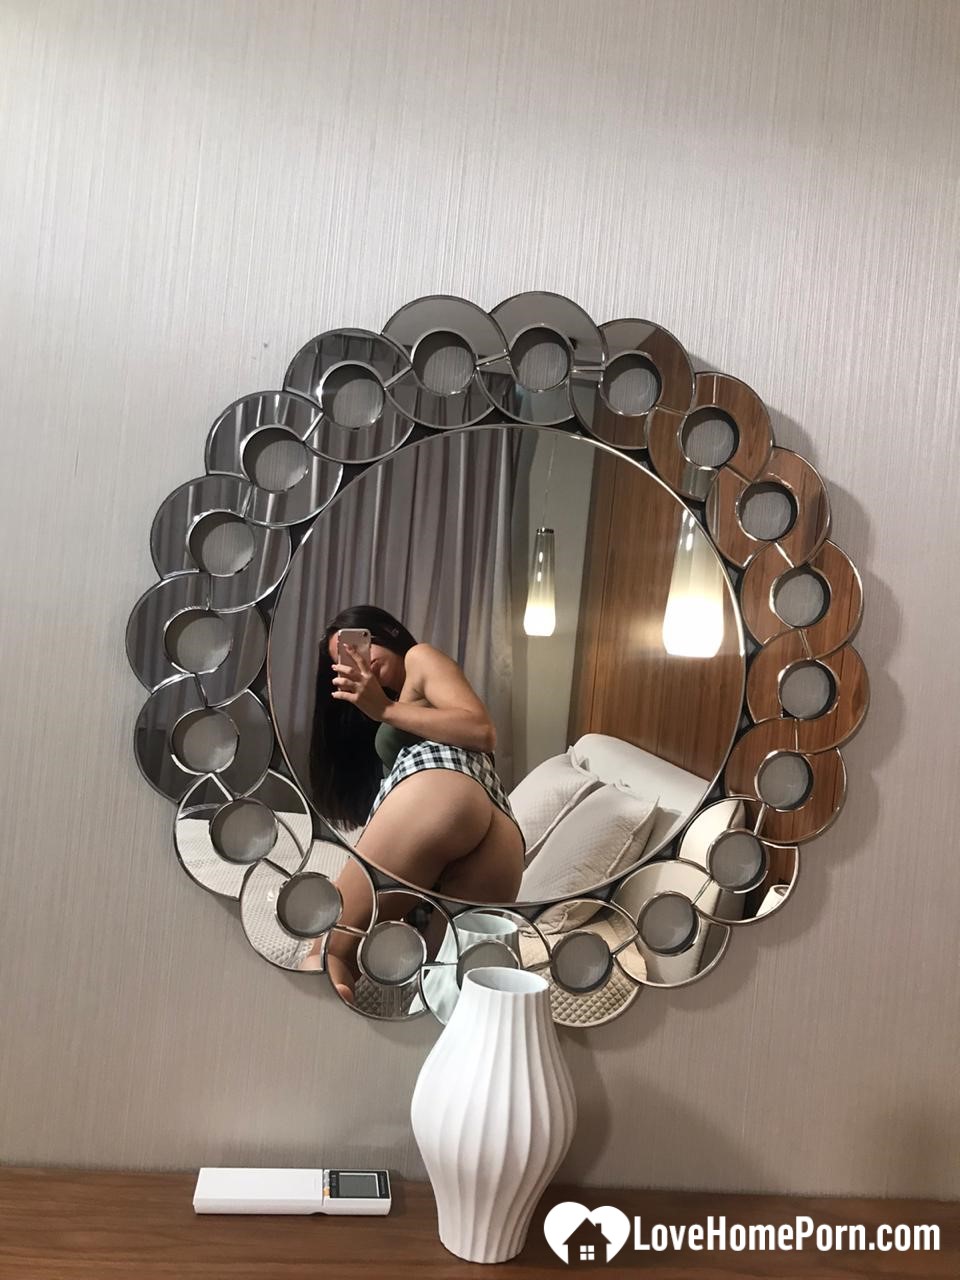 Hot schoolgirl reveals her tits in the mirror